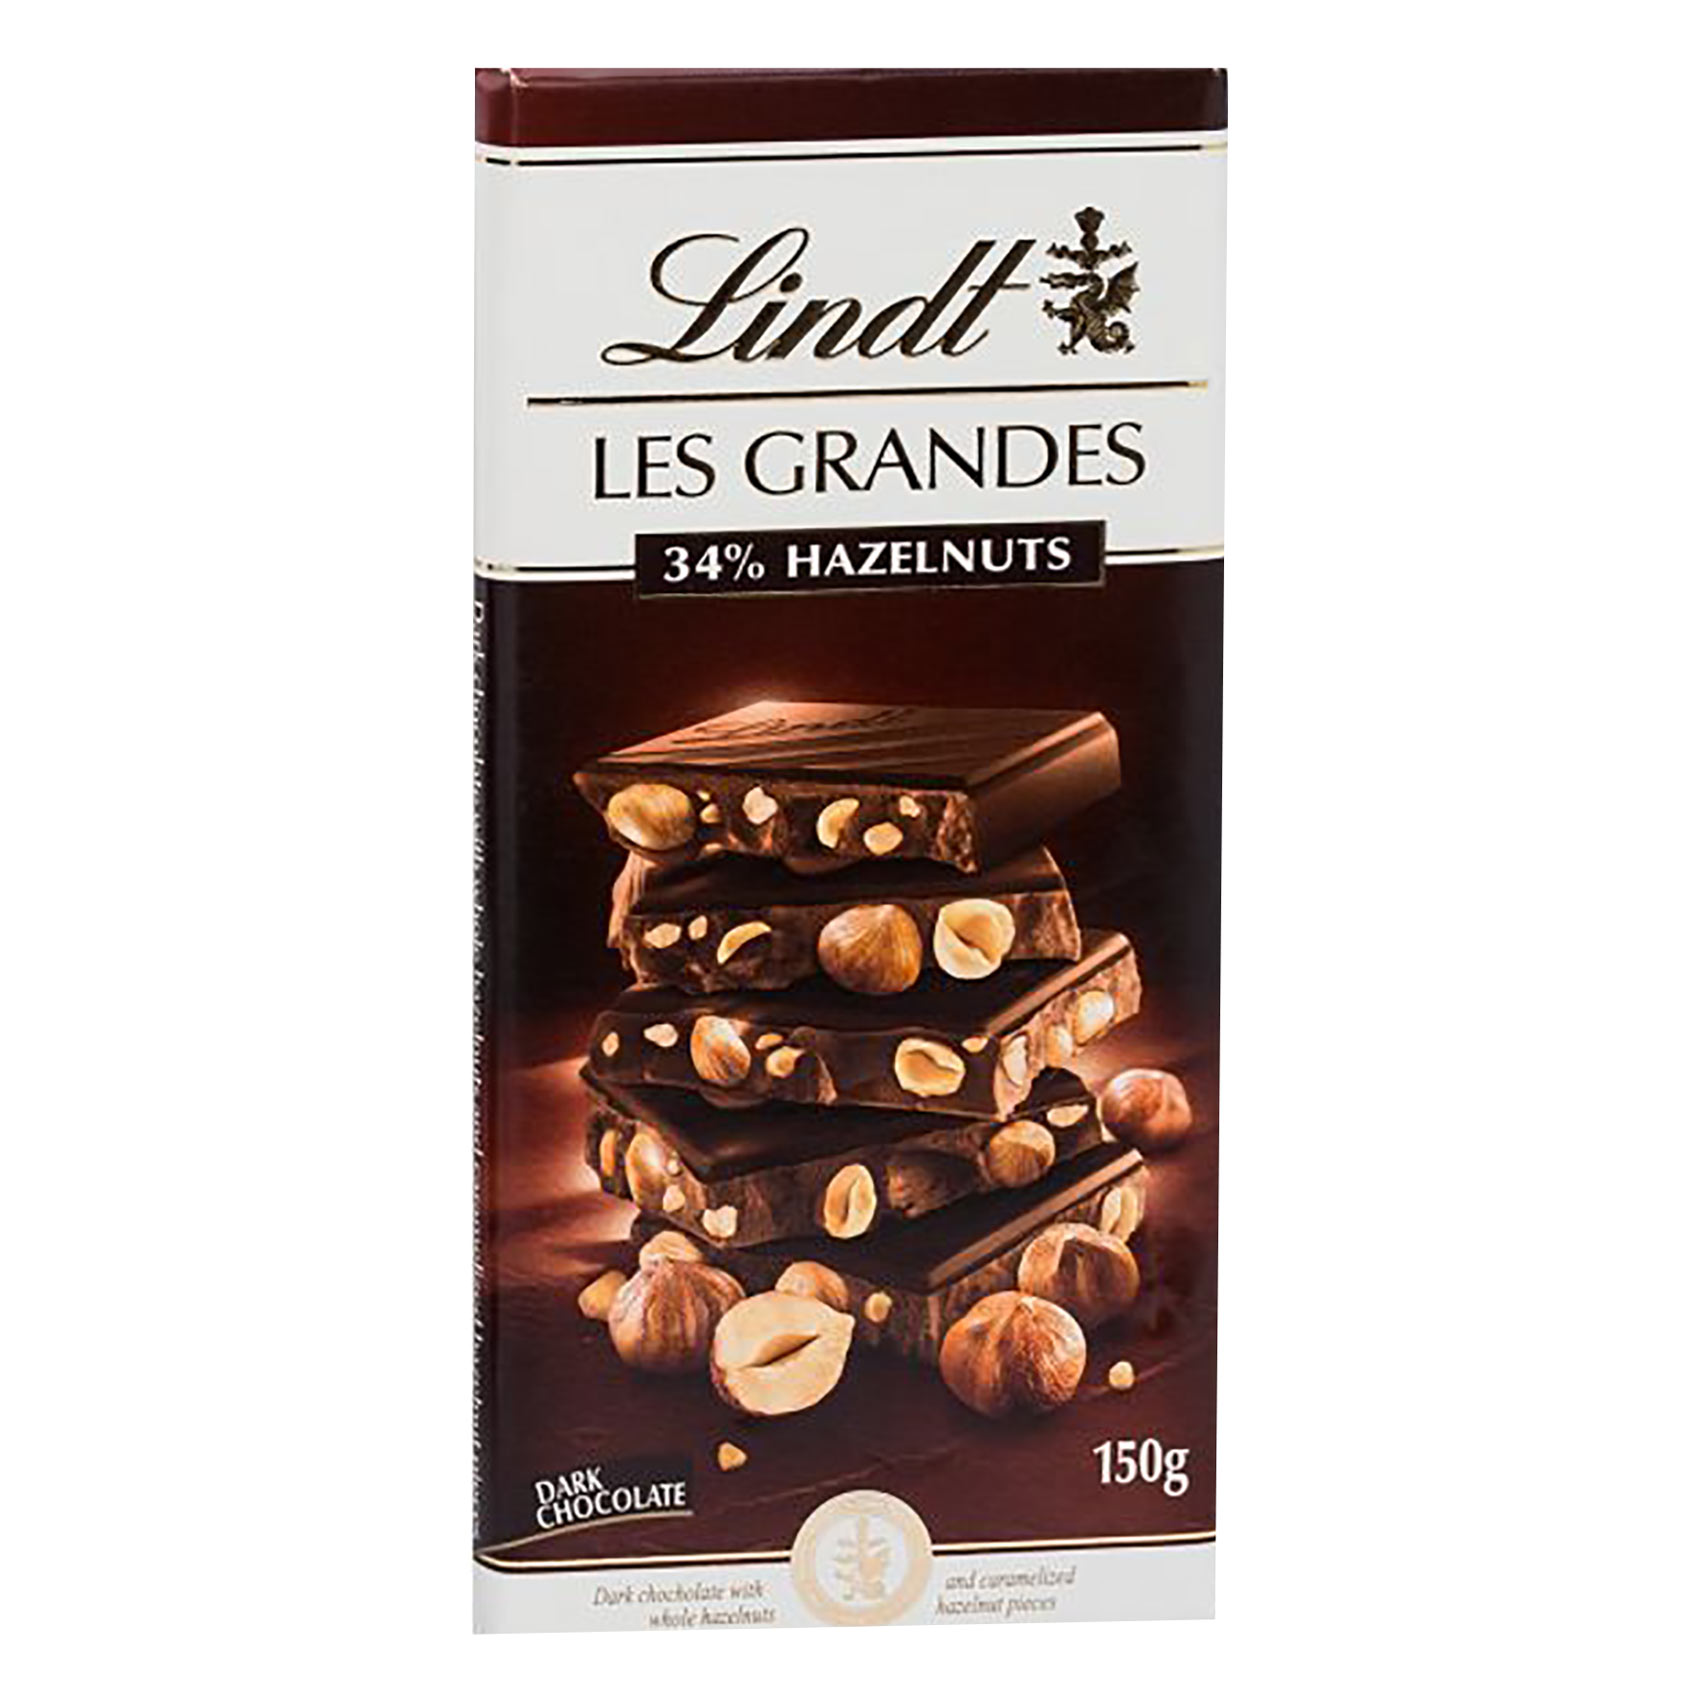 ليندت ليه غرانديس شوكولاته داكنة بنسبة 34% من البندق 150 غرام.